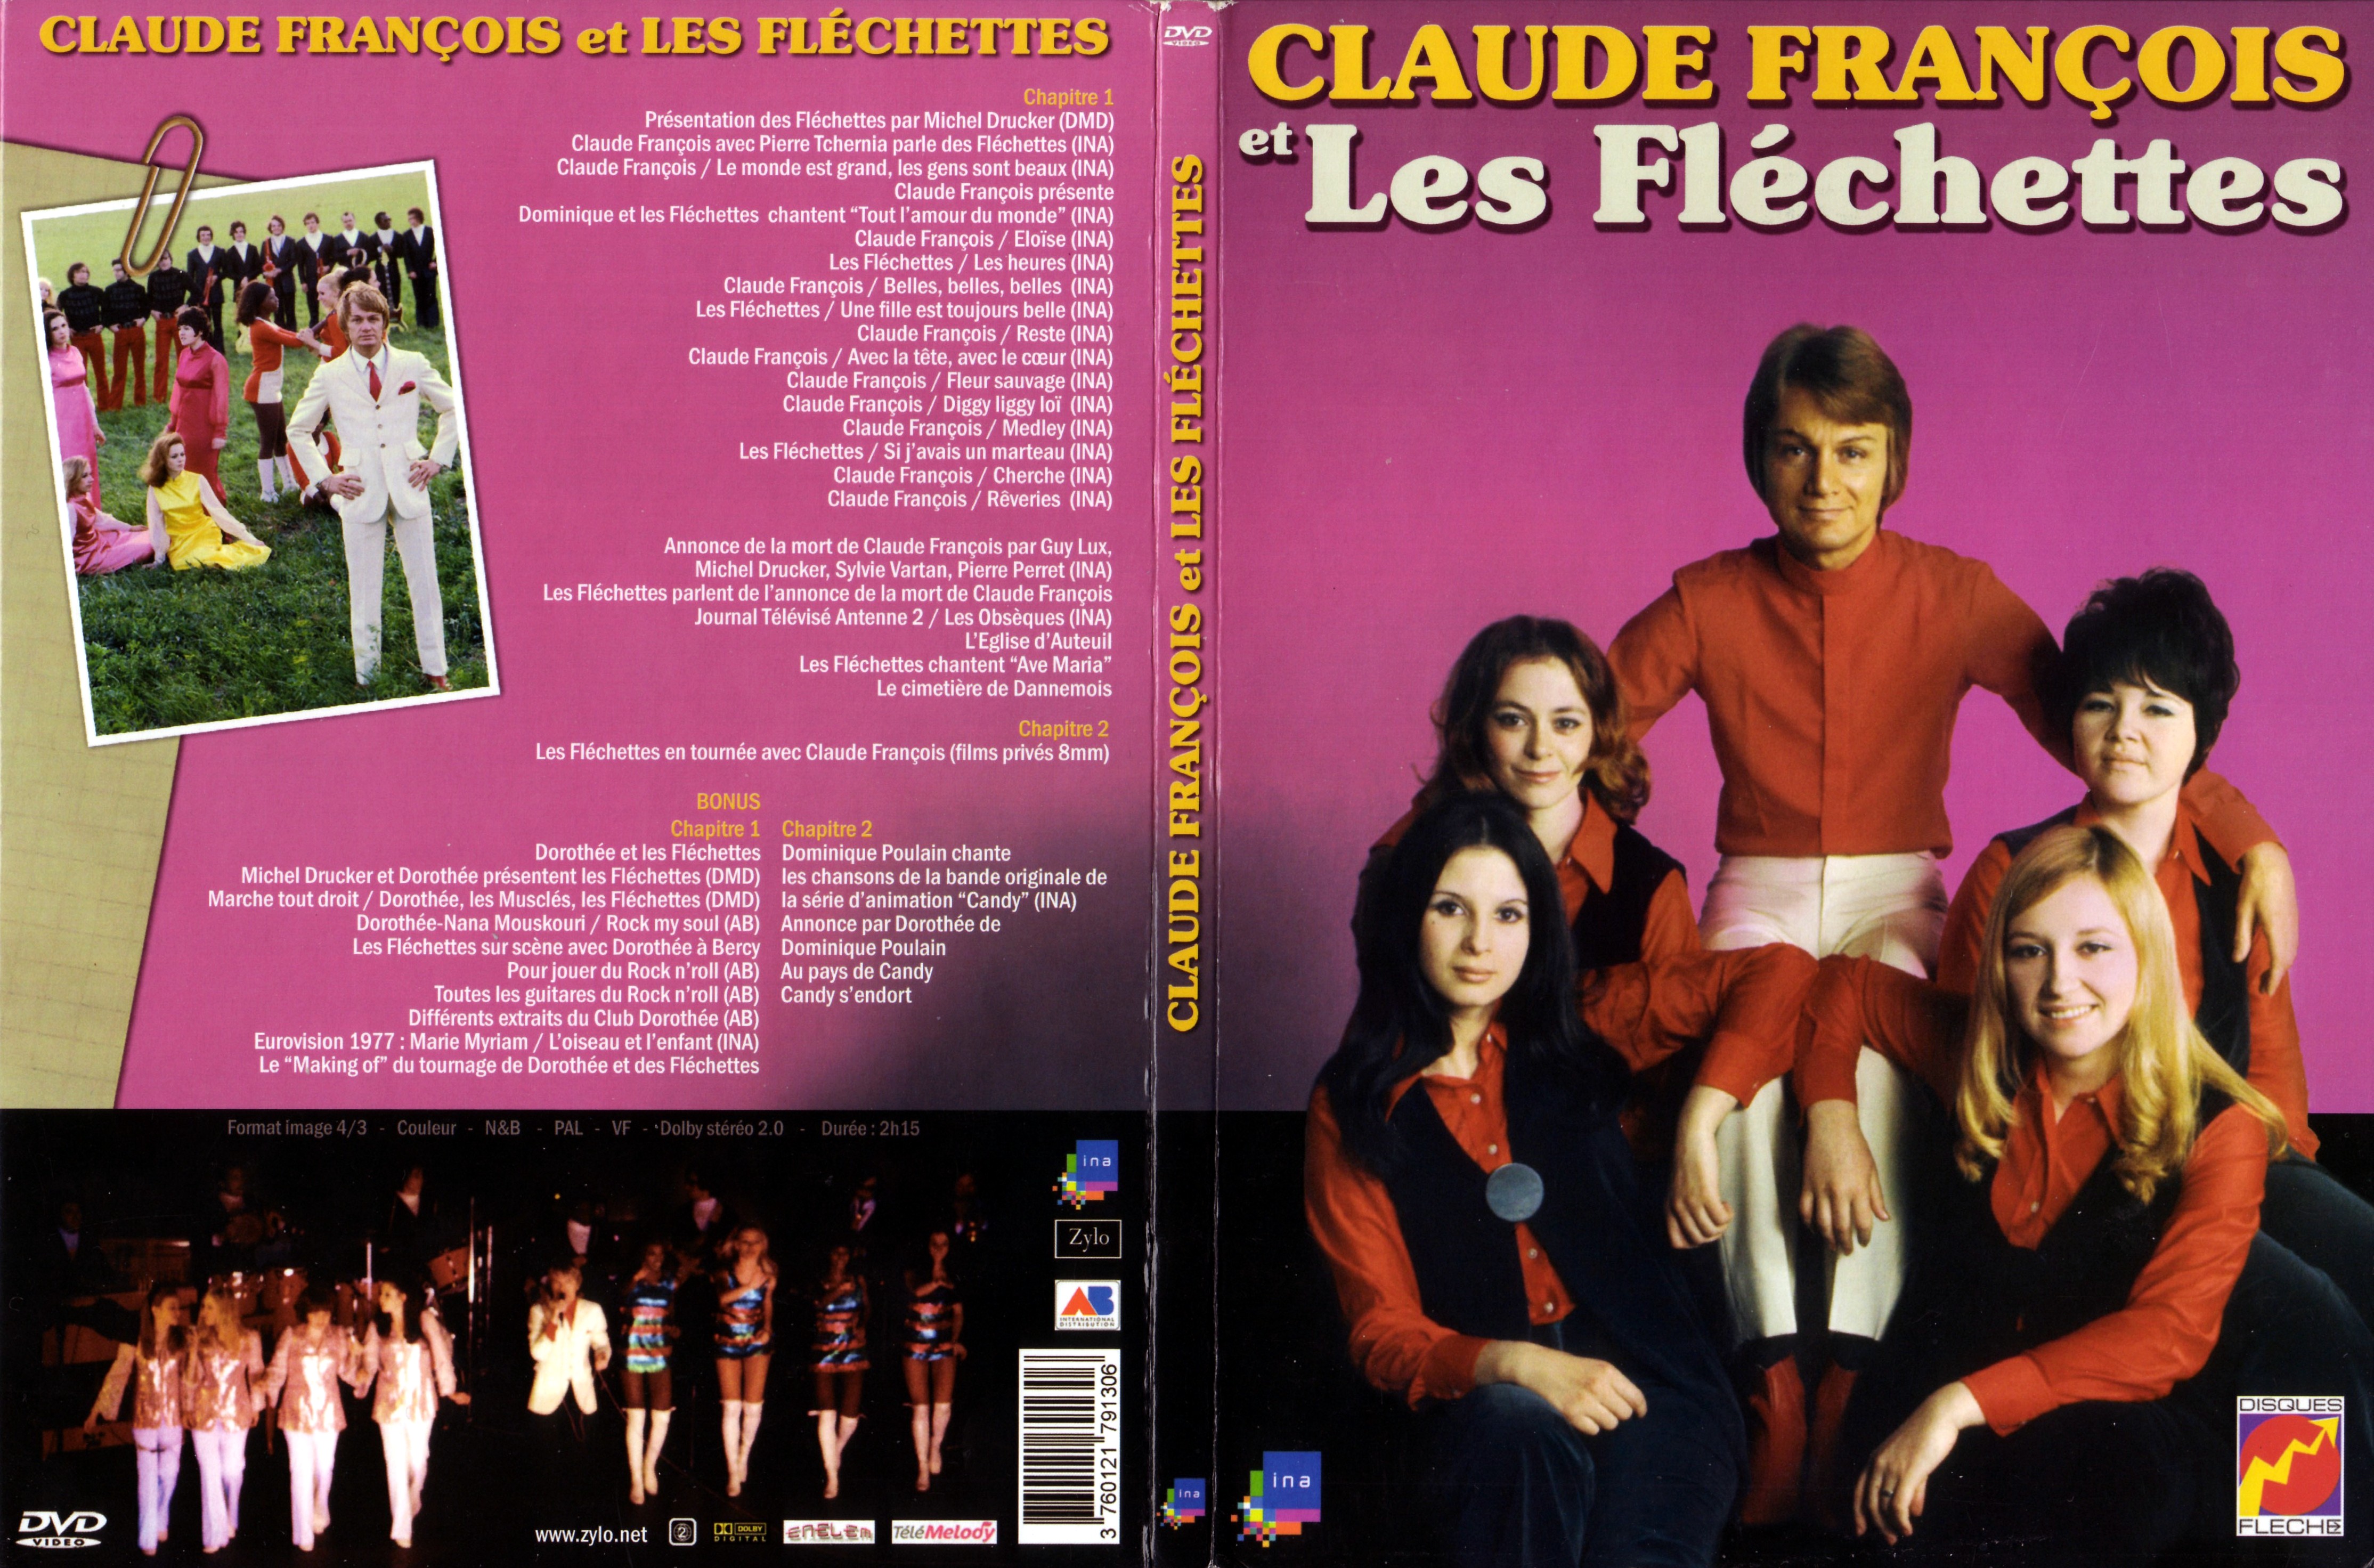 Jaquette DVD Claude Francois et les Flchettes